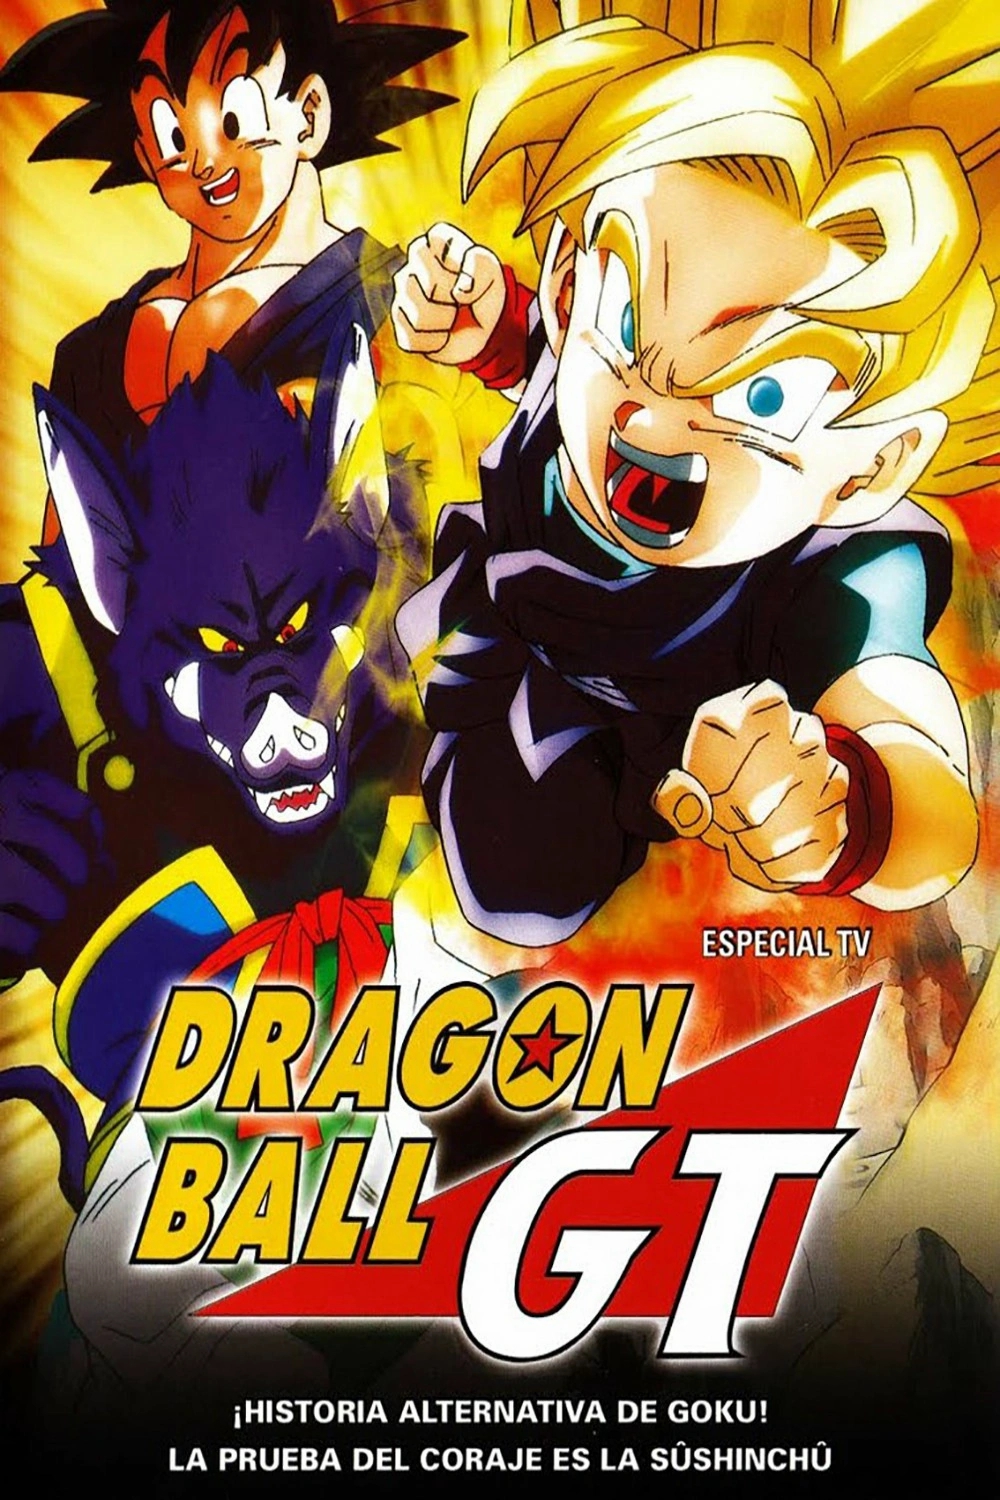 Dragon Ball GT - Especial 100 Años Después [960p-1080p]